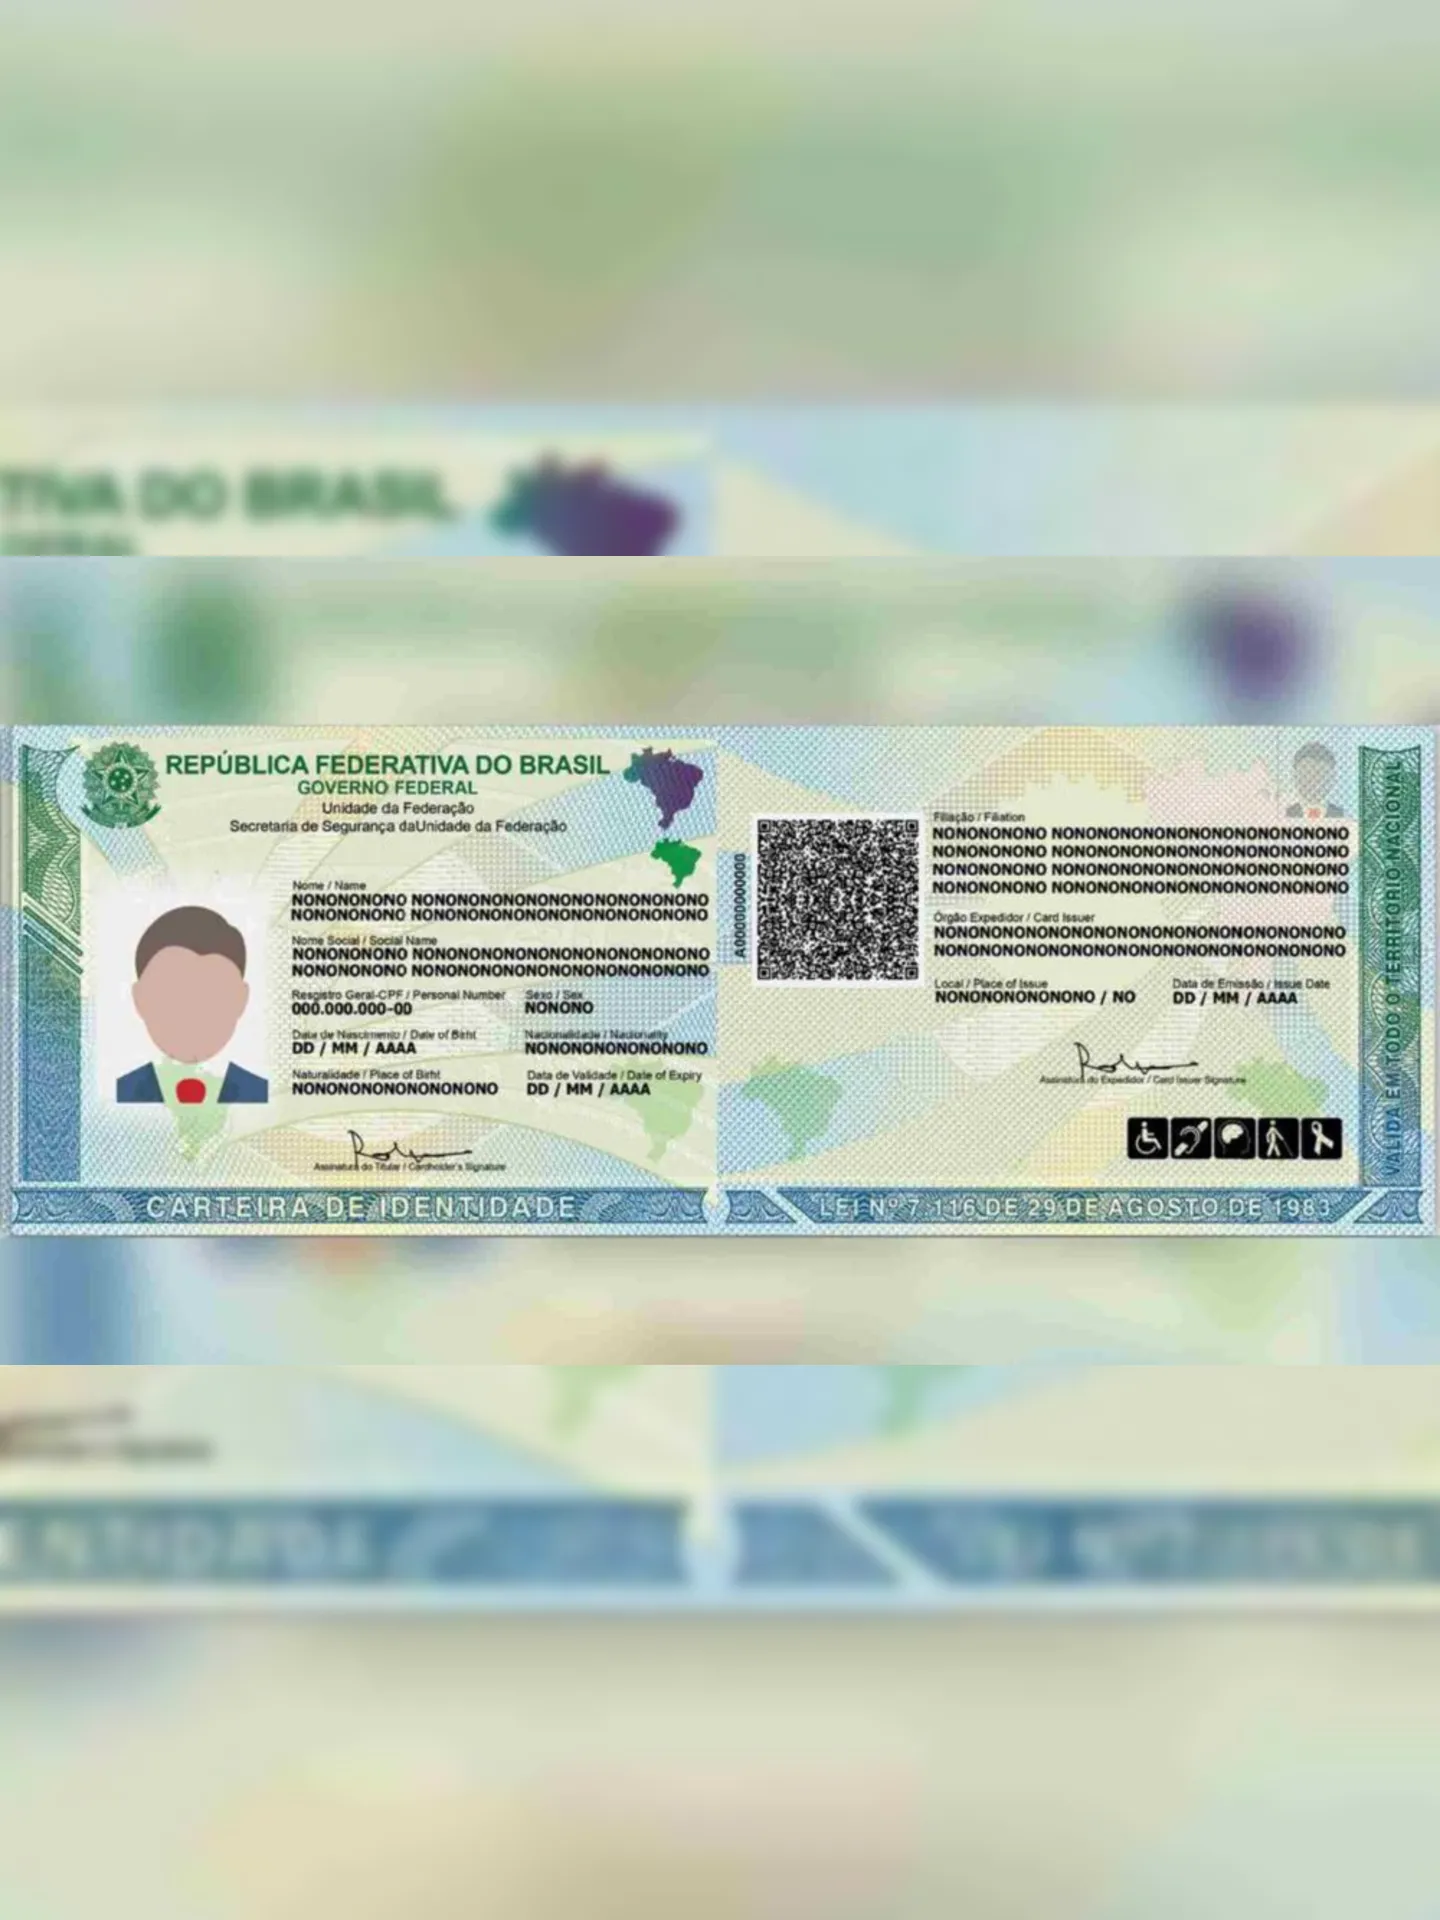 A nova carteira de identidade apresenta maior segurança, com um QR Code que permite verificar a autenticidade do documento e se ele foi furtado ou extraviado